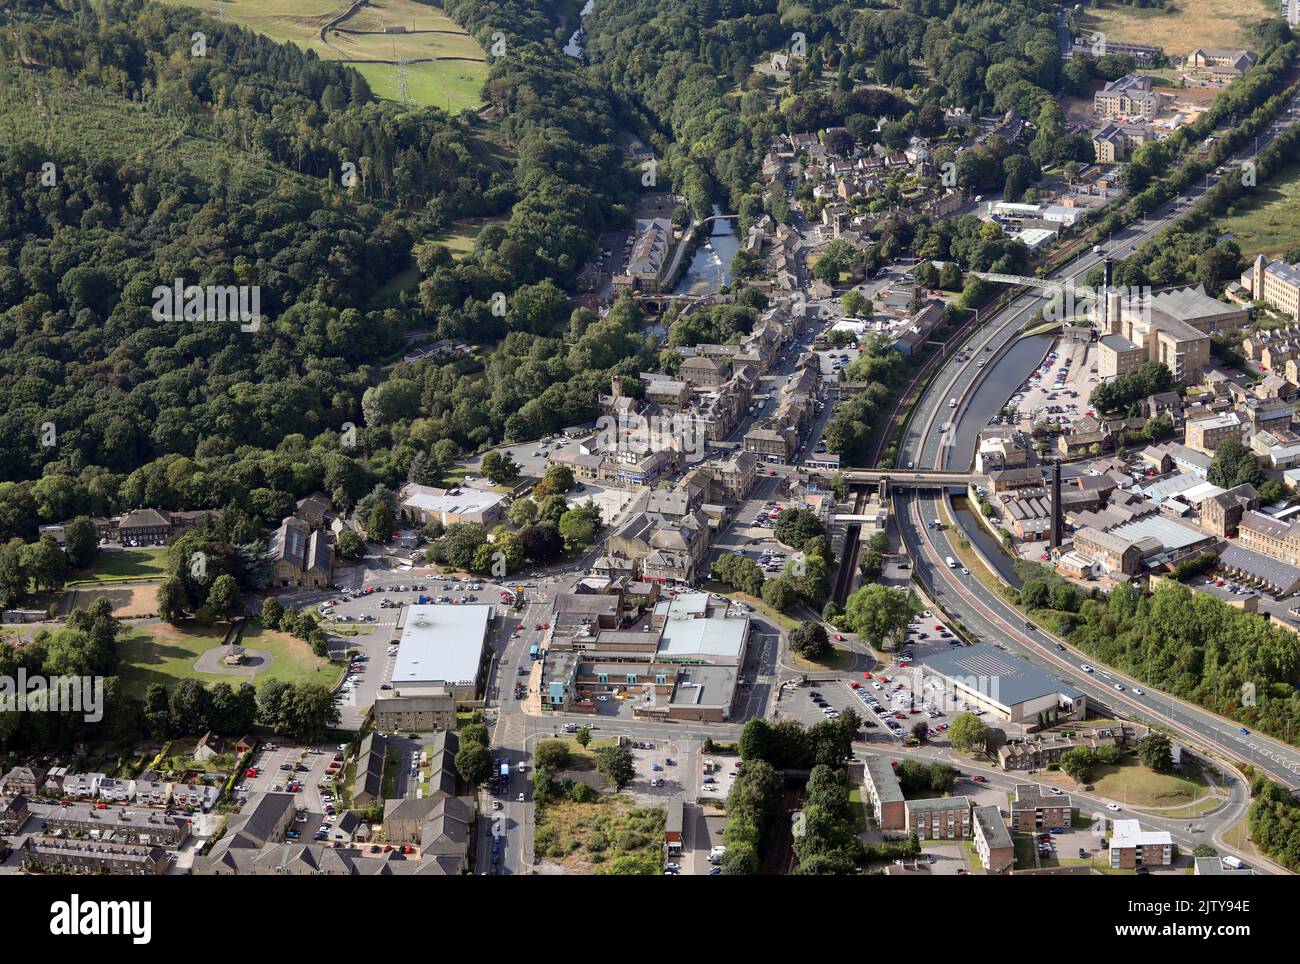 Vue aérienne de la ville marchande de Bingley dans la vallée de la rivière aire, au nord-ouest de Bradford, West Yorkshire Banque D'Images